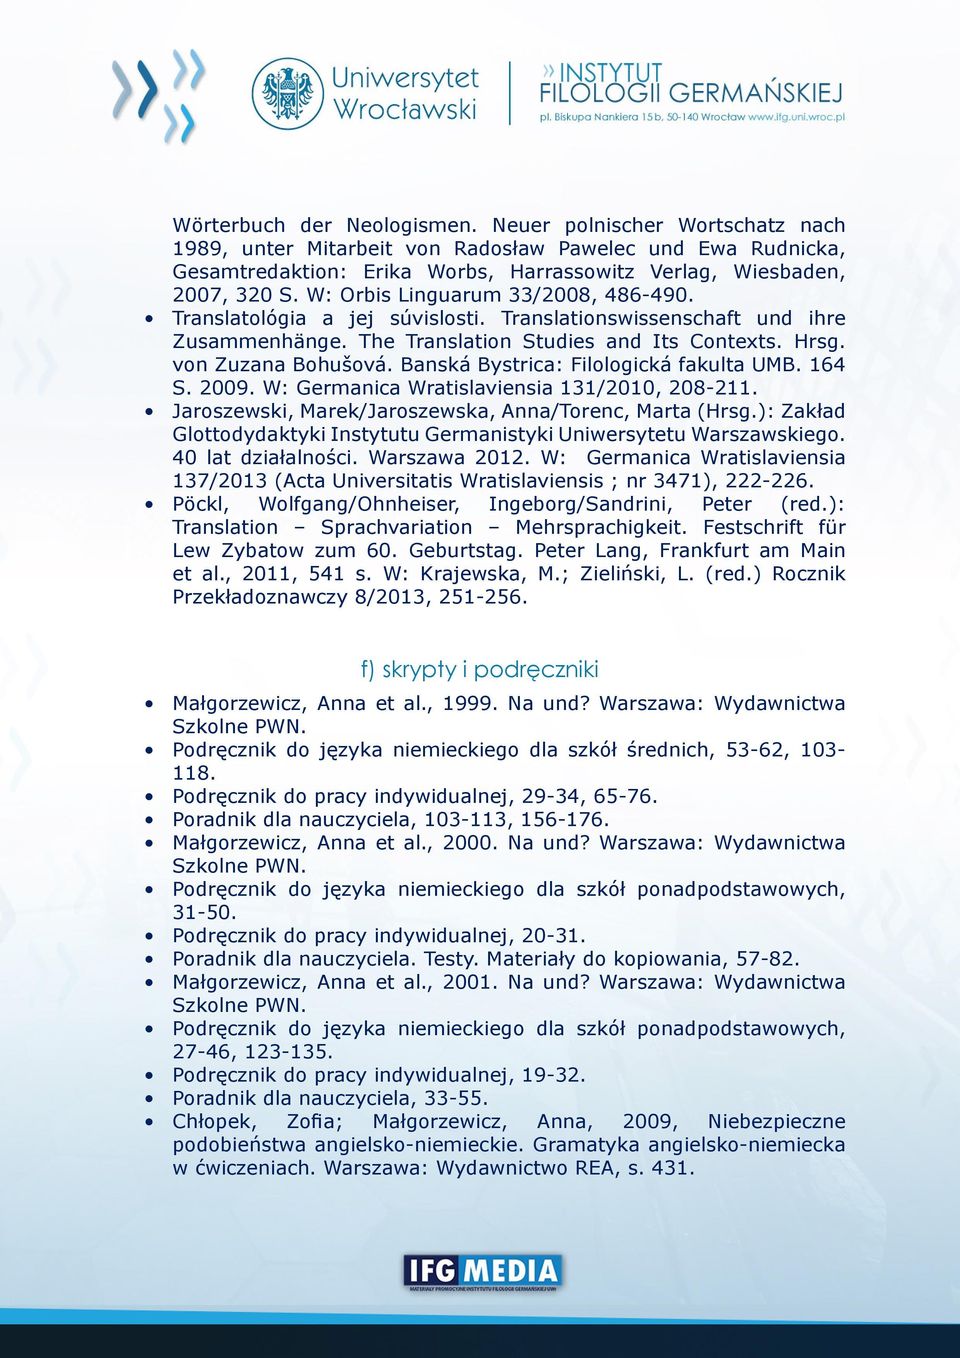 Banská Bystrica: Filologická fakulta UMB. 164 S. 2009. W: Germanica Wratislaviensia 131/2010, 208-211. Jaroszewski, Marek/Jaroszewska, Anna/Torenc, Marta (Hrsg.